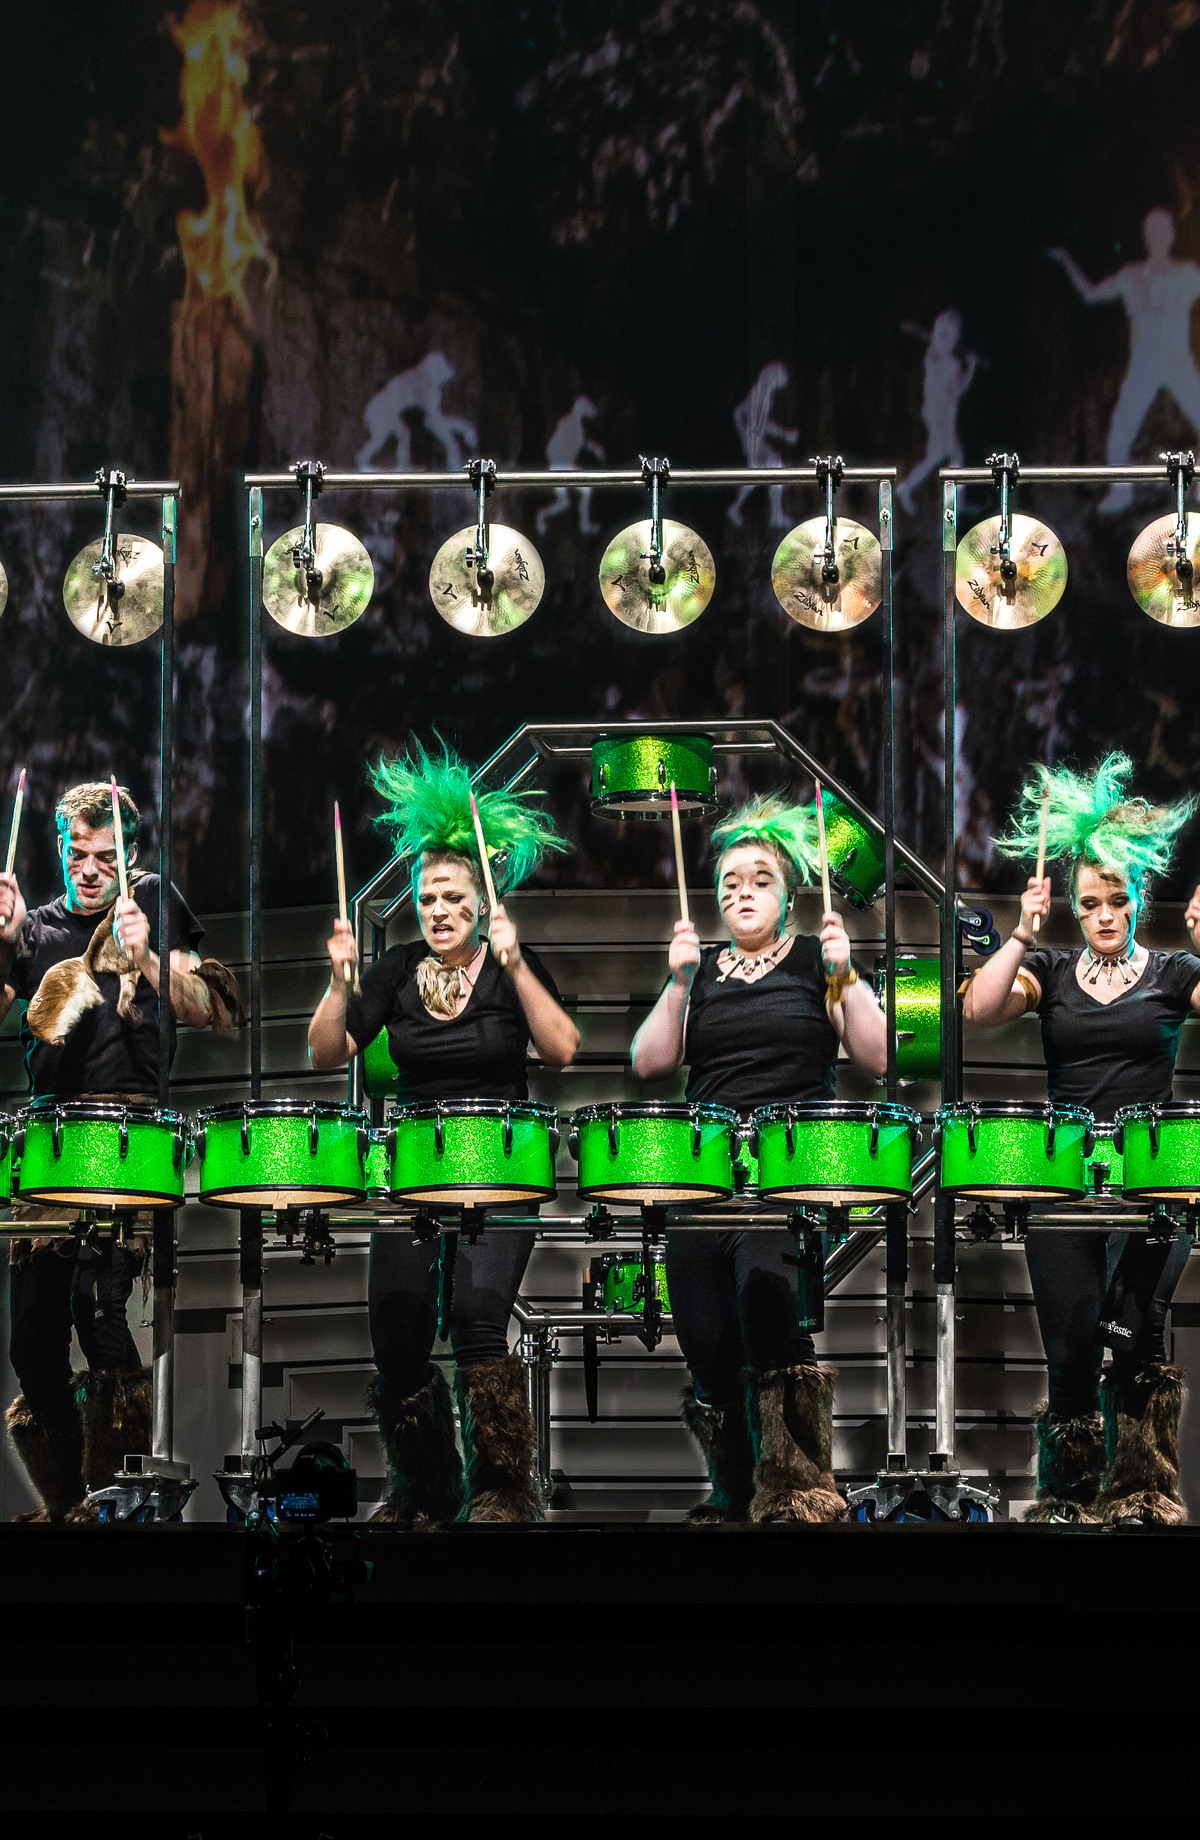 Sechs Trommler performen an einem beleuchteten Schlagzeug mit grünen Trommeln vor einem Hintergrund, der eine waldähnliche Szene zeigt. Sie sind energisch und tragen einheitliche schwarze Outfits mit grünen Akzenten.
